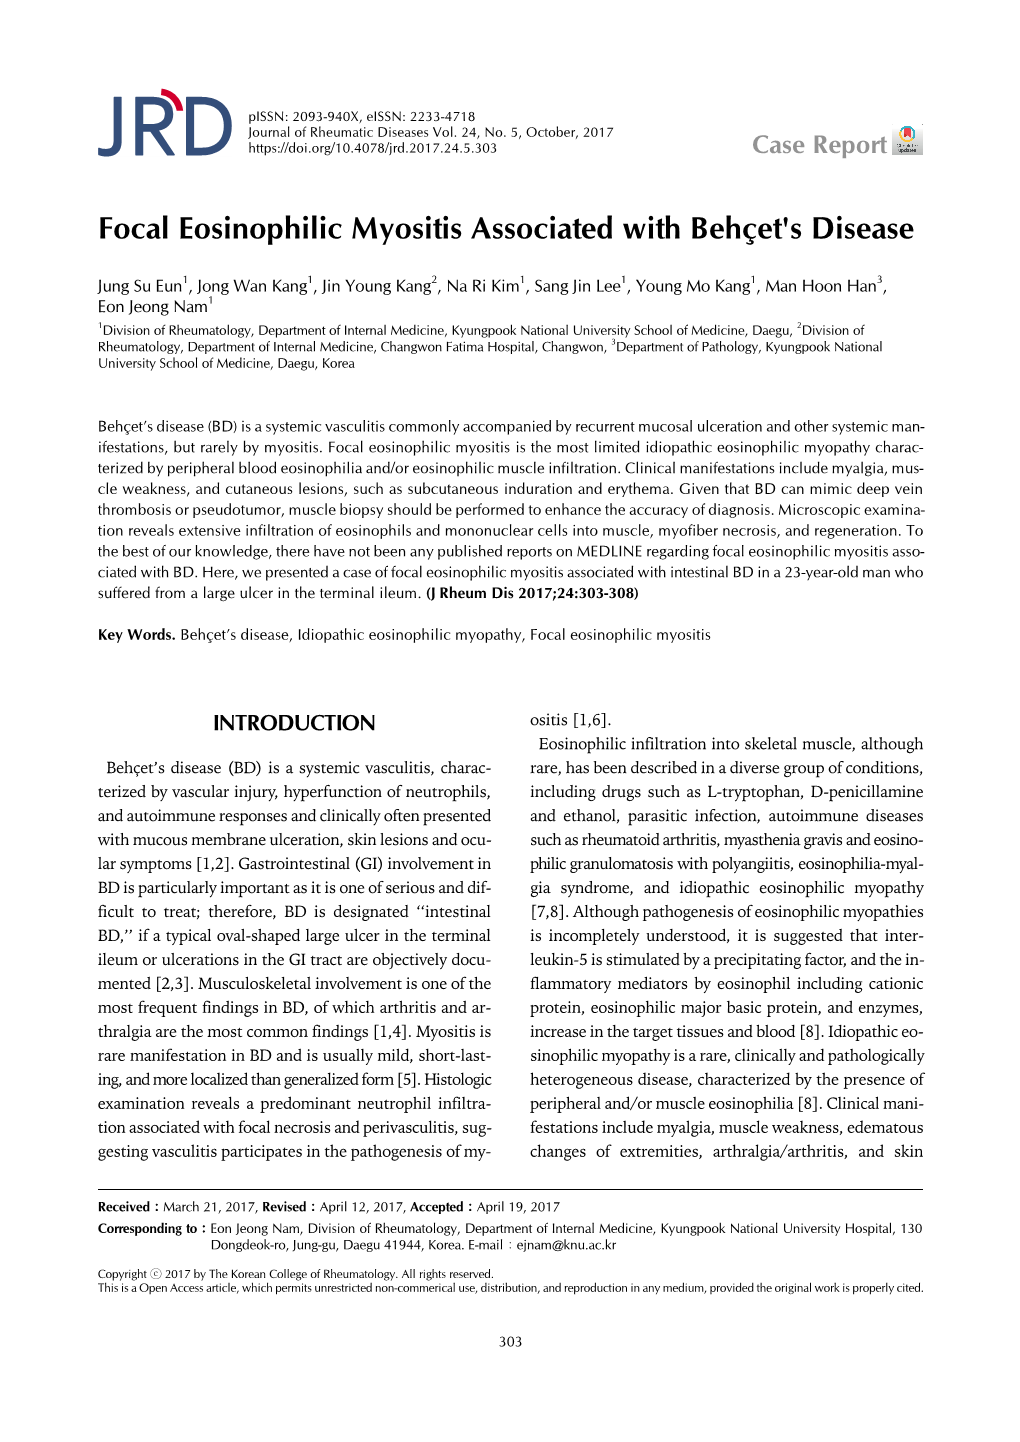 Focal Eosinophilic Myositis Associated with Behçet's Disease